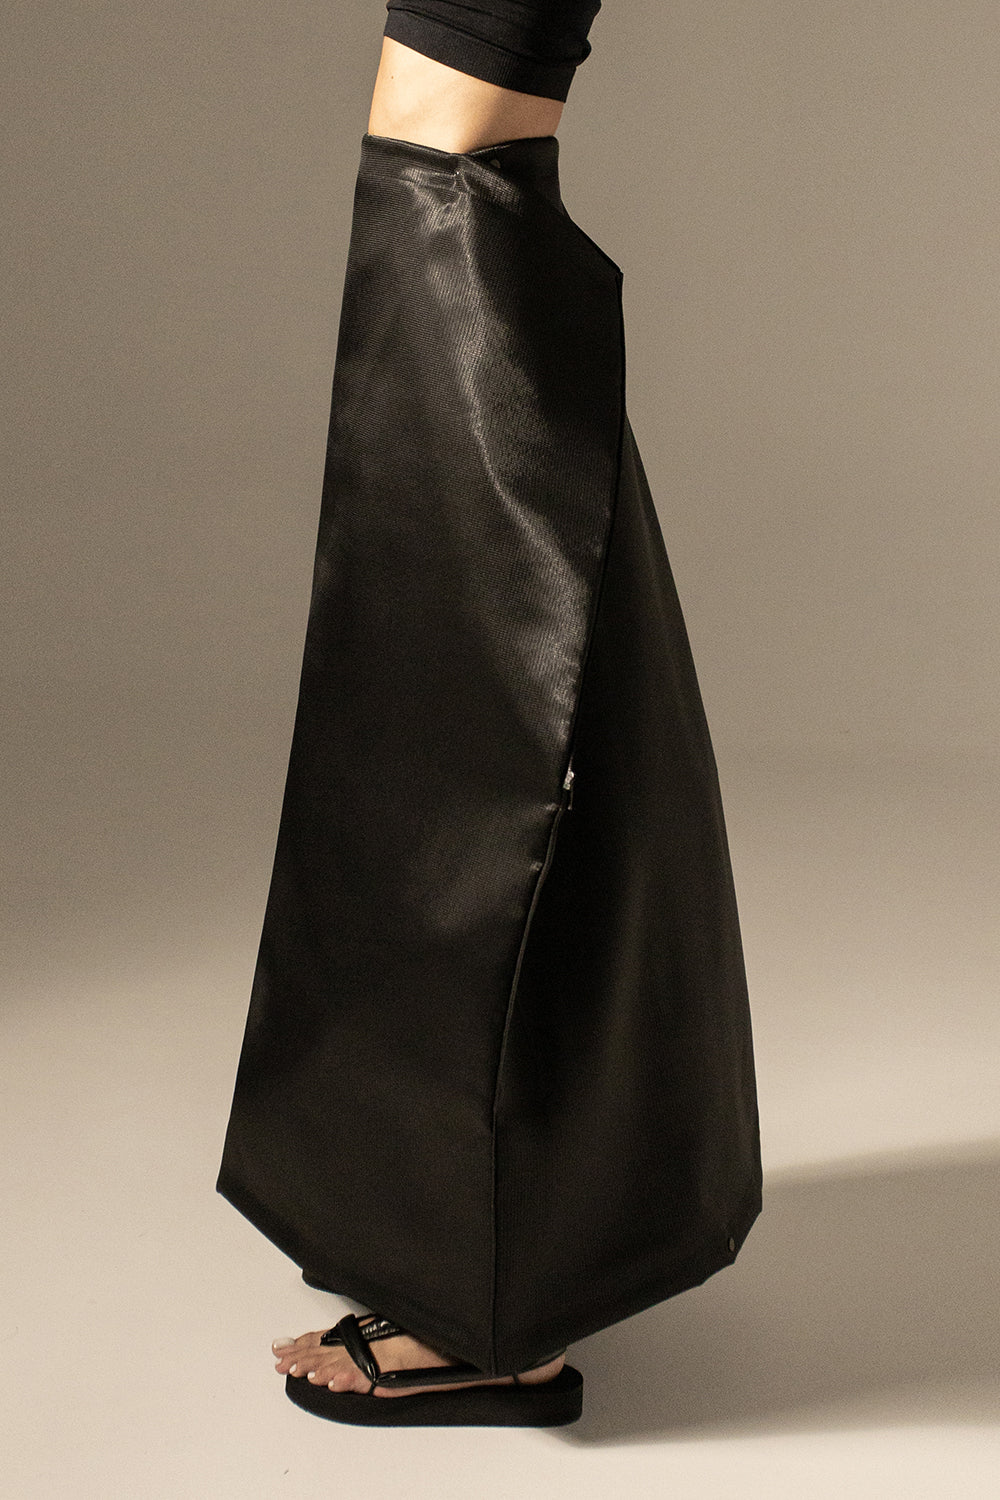 EXTRAVERT 2 way transforming piece: skirt / bag